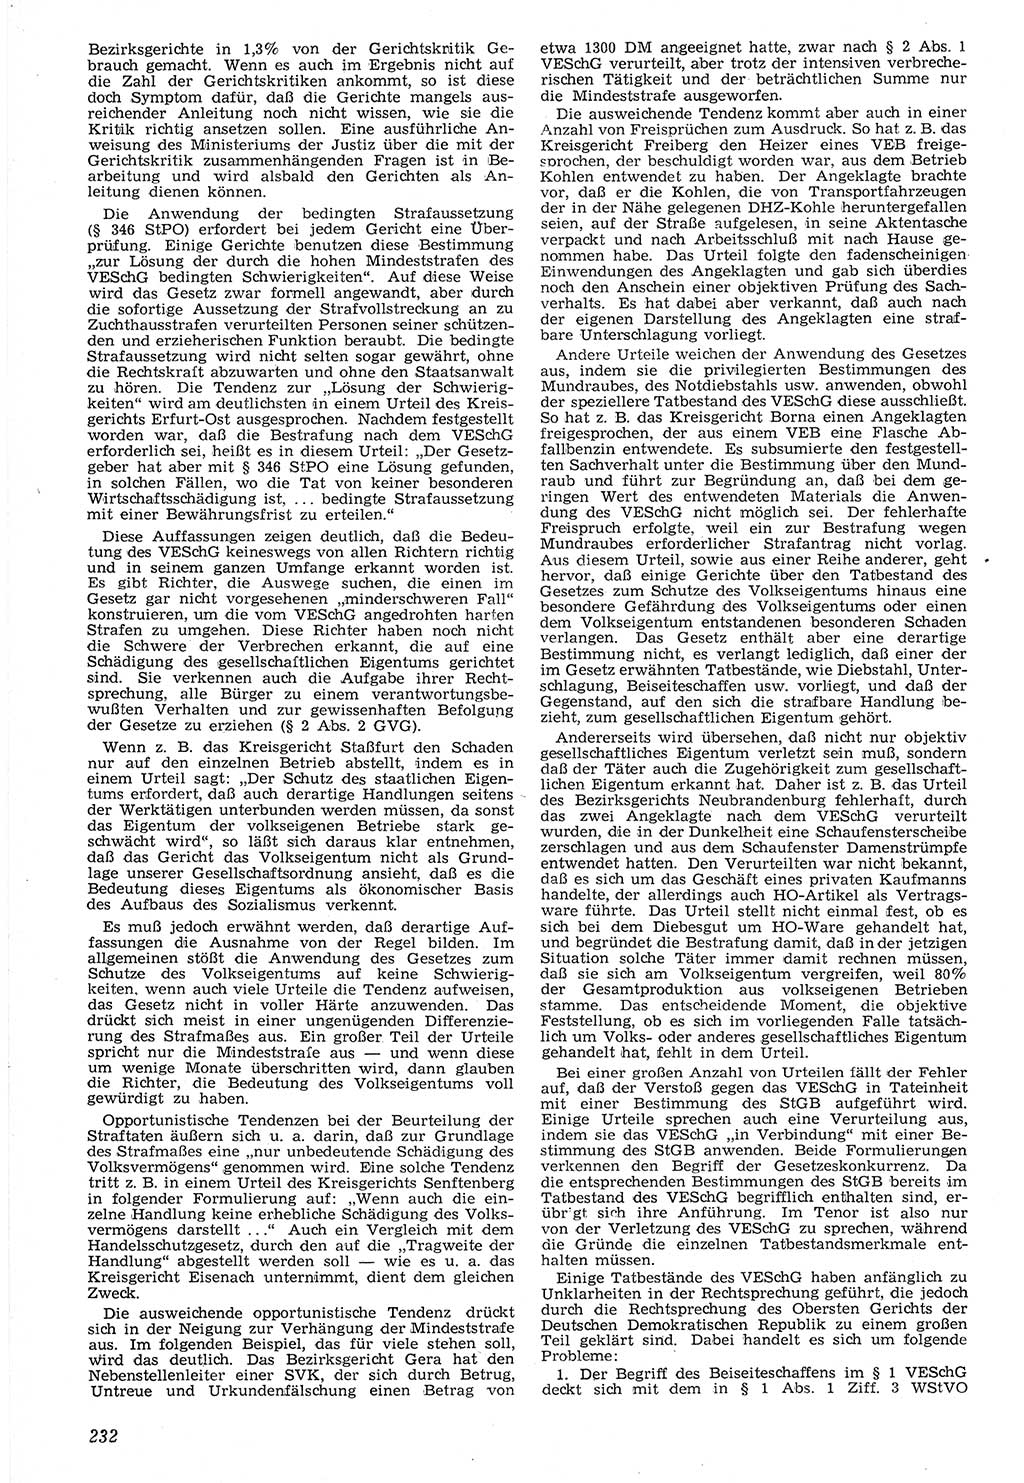 Neue Justiz (NJ), Zeitschrift für Recht und Rechtswissenschaft [Deutsche Demokratische Republik (DDR)], 7. Jahrgang 1953, Seite 232 (NJ DDR 1953, S. 232)